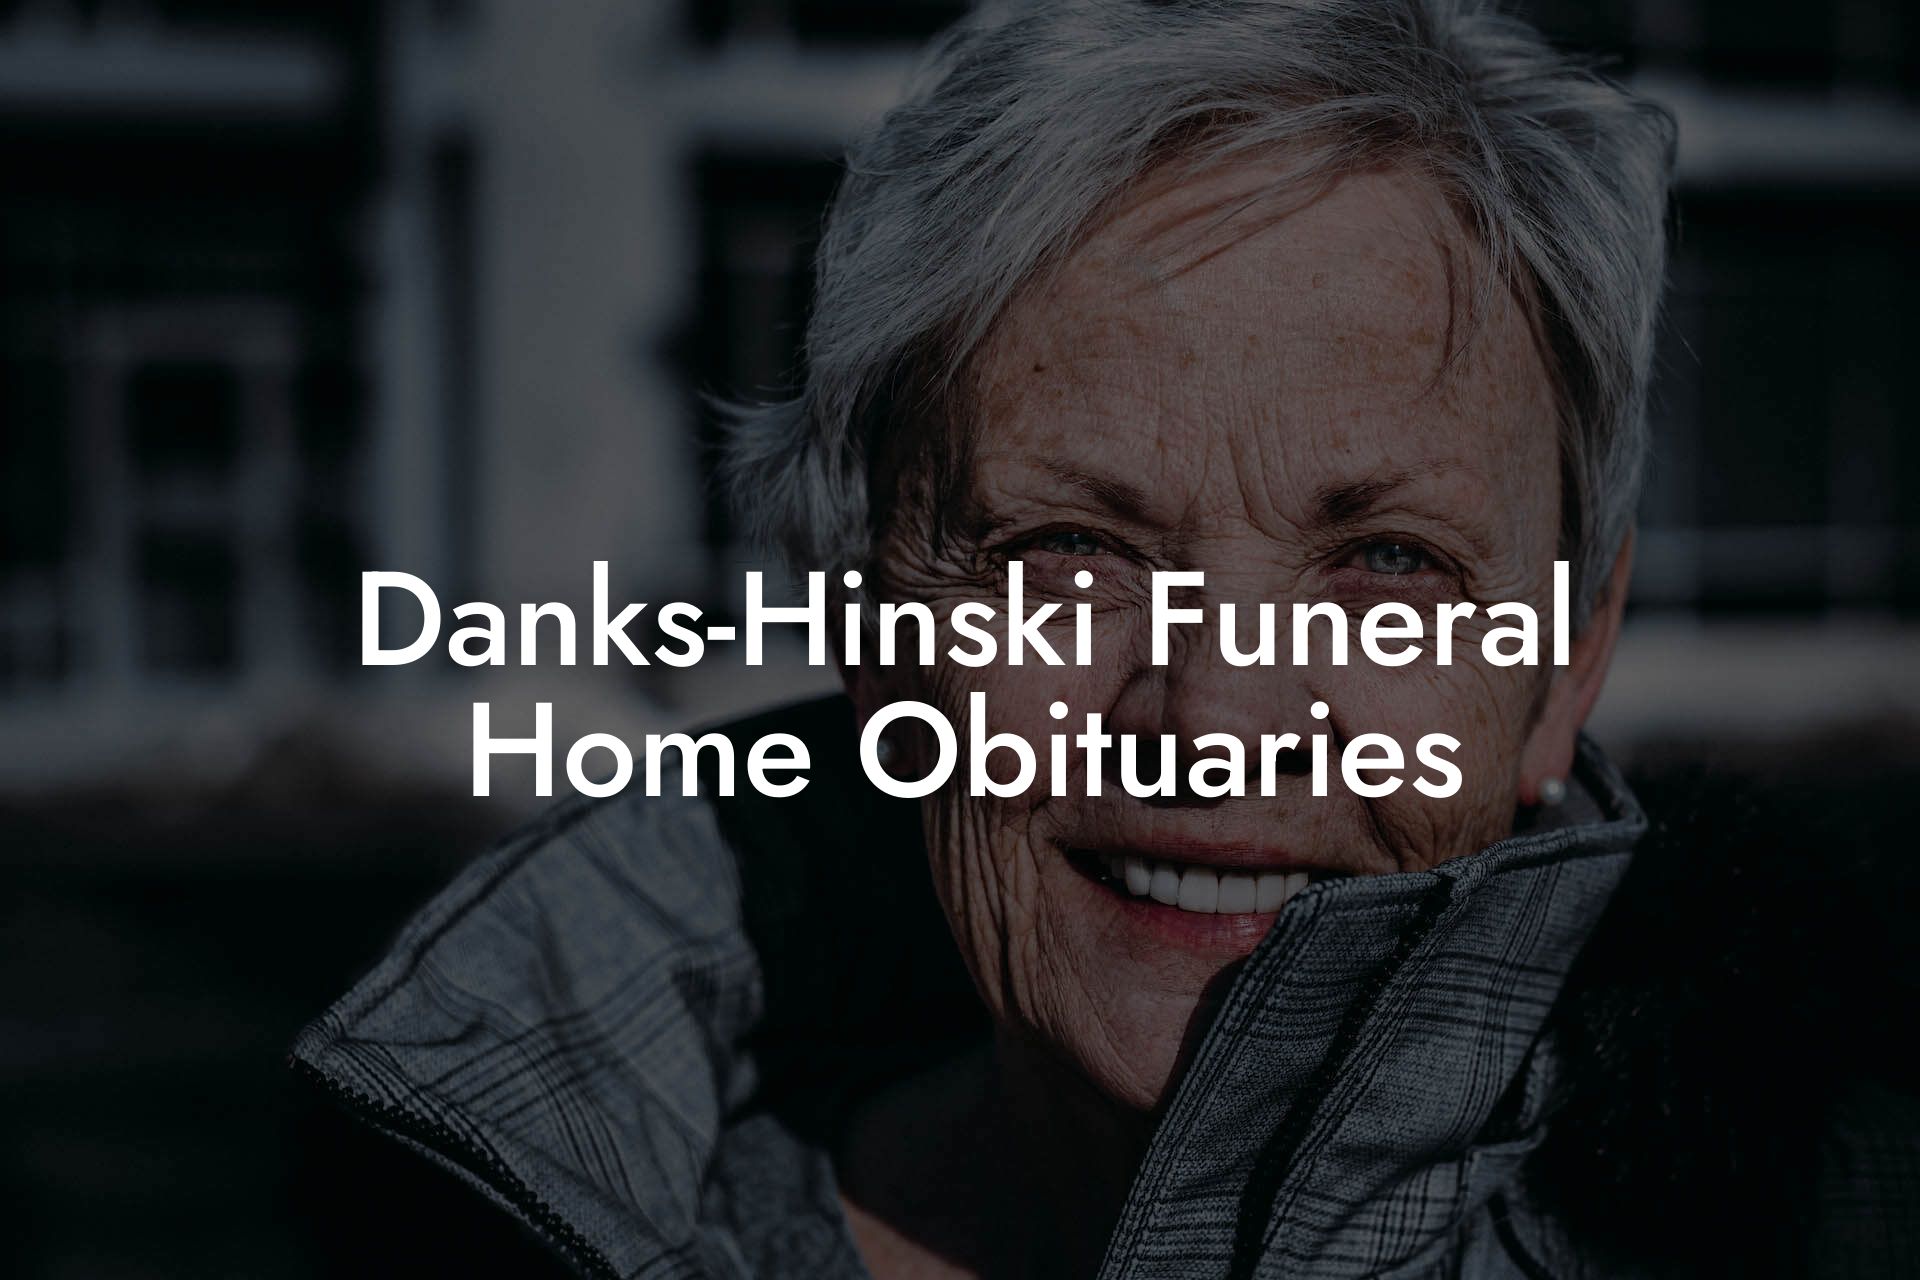 Danks-Hinski Funeral Home Obituaries